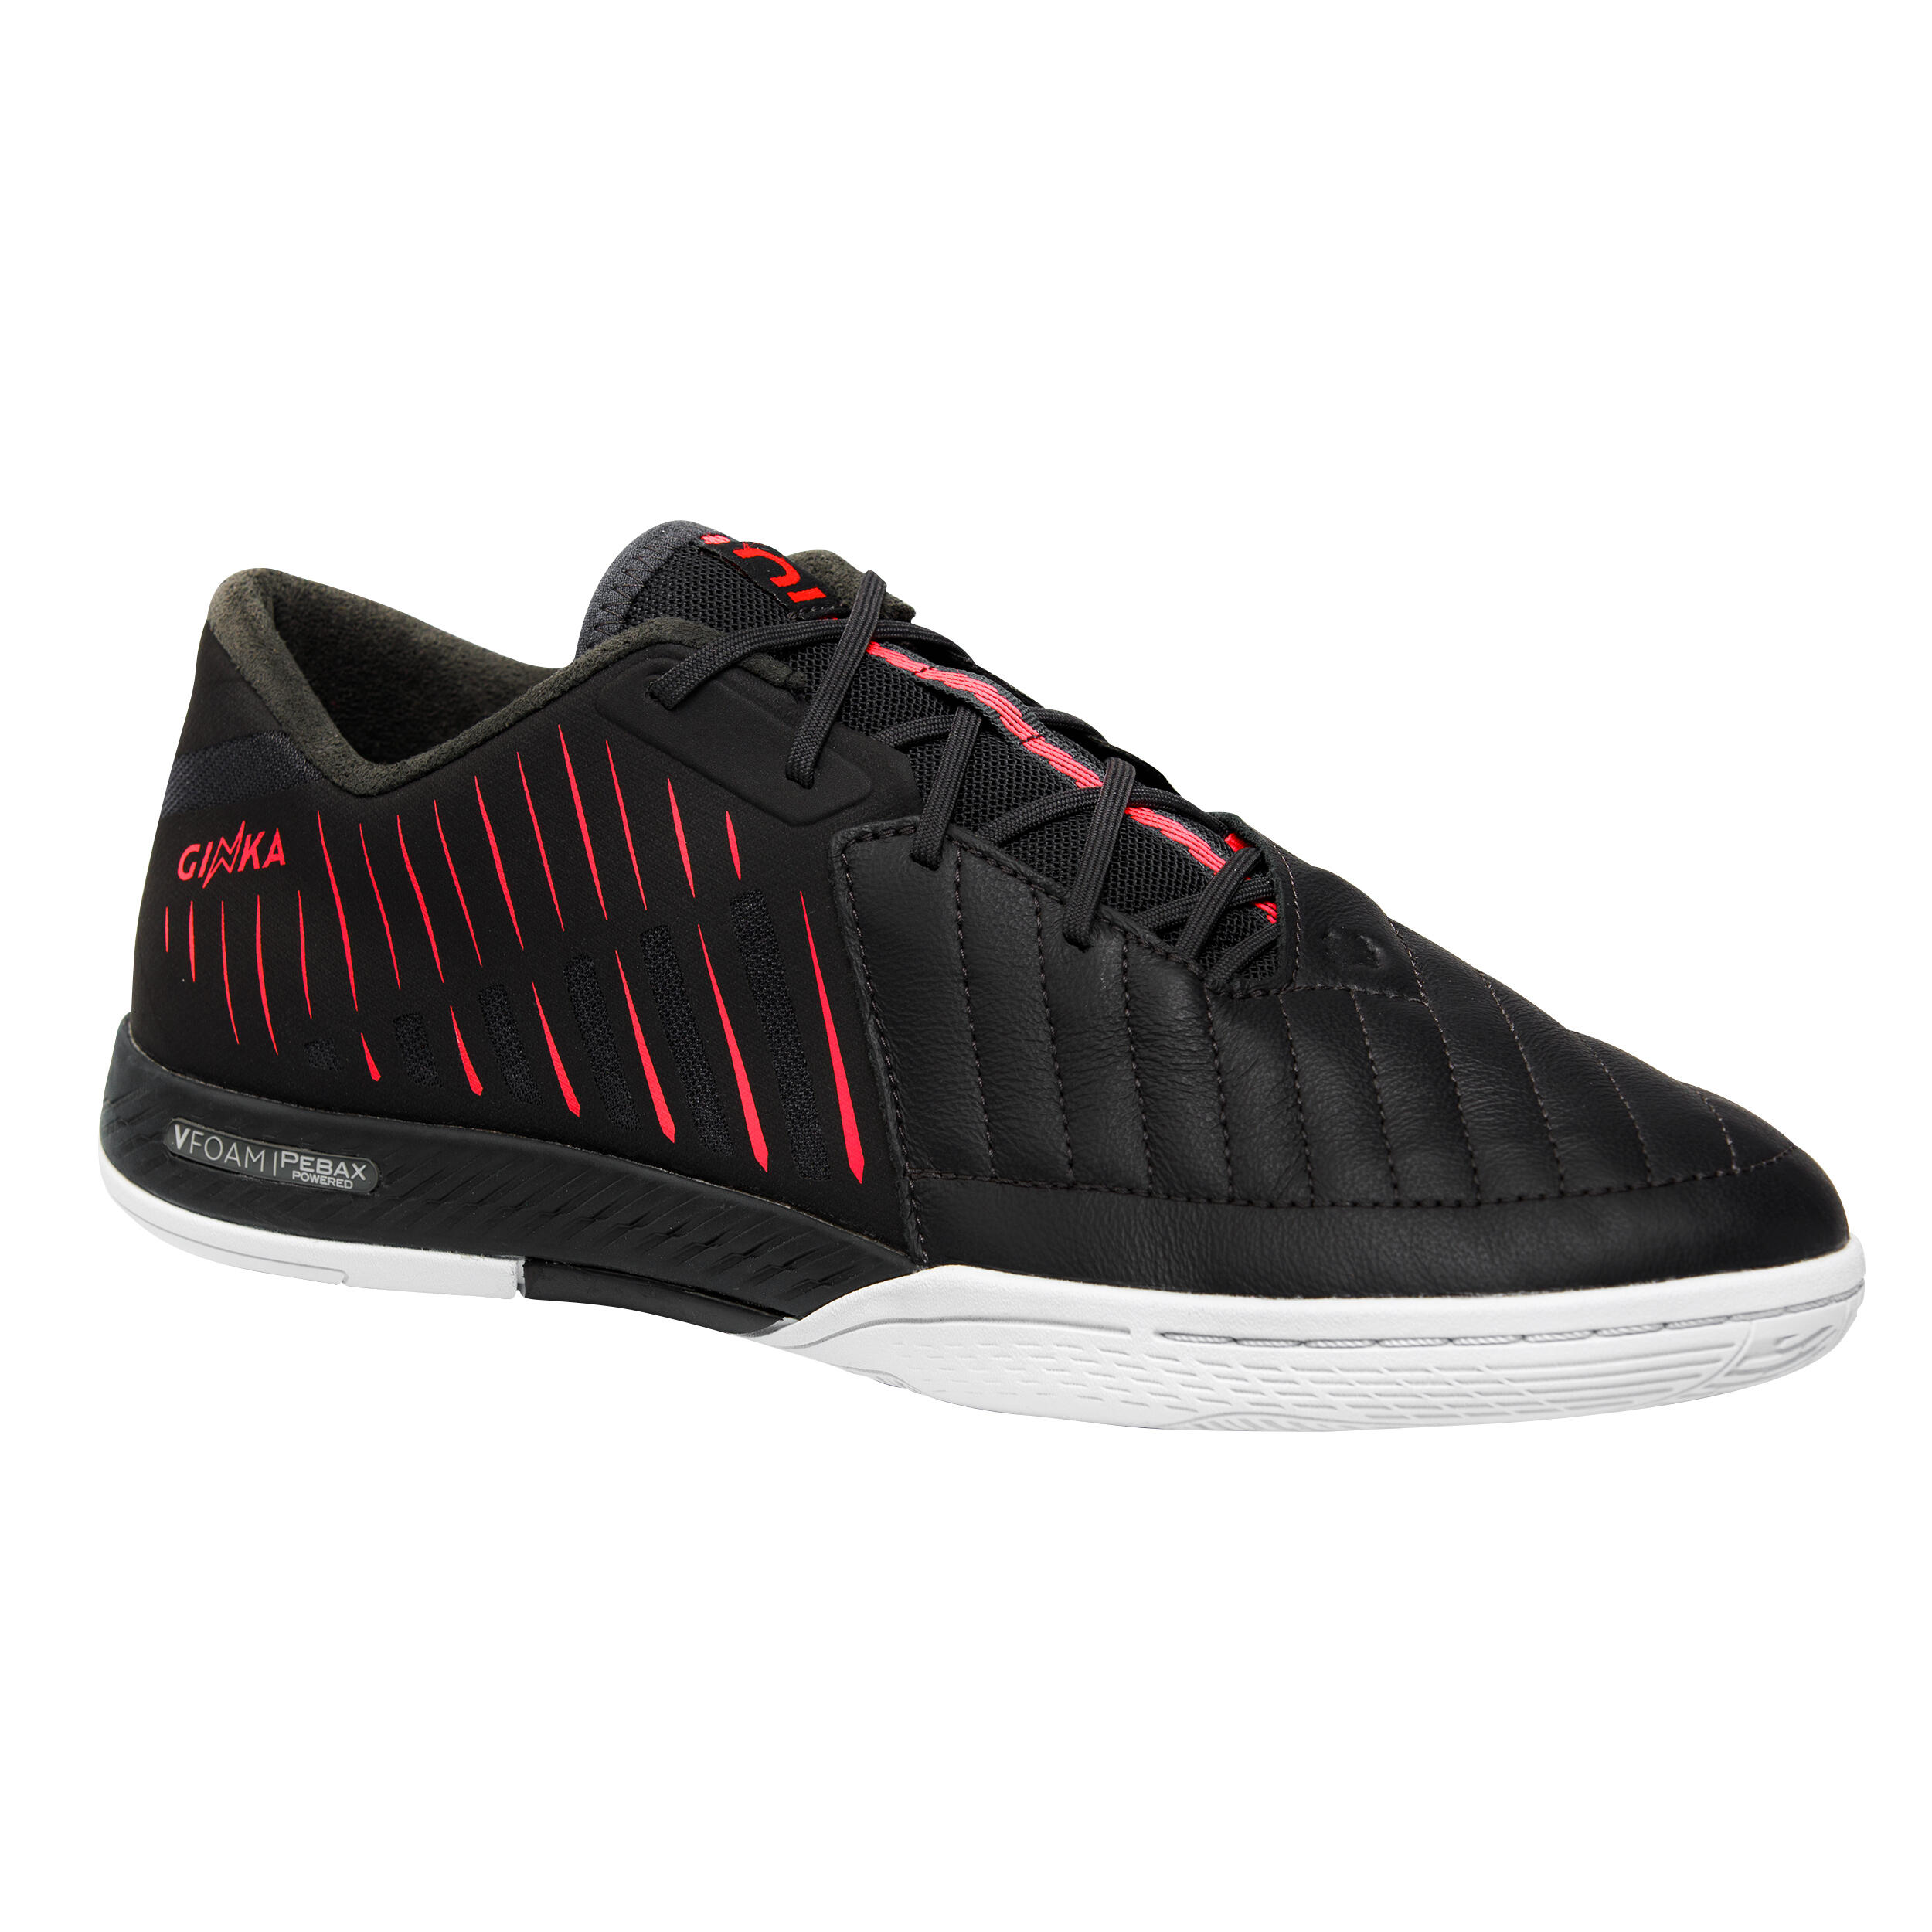 Futsal Shoes Ginka Pro - Black/Pink 1/12